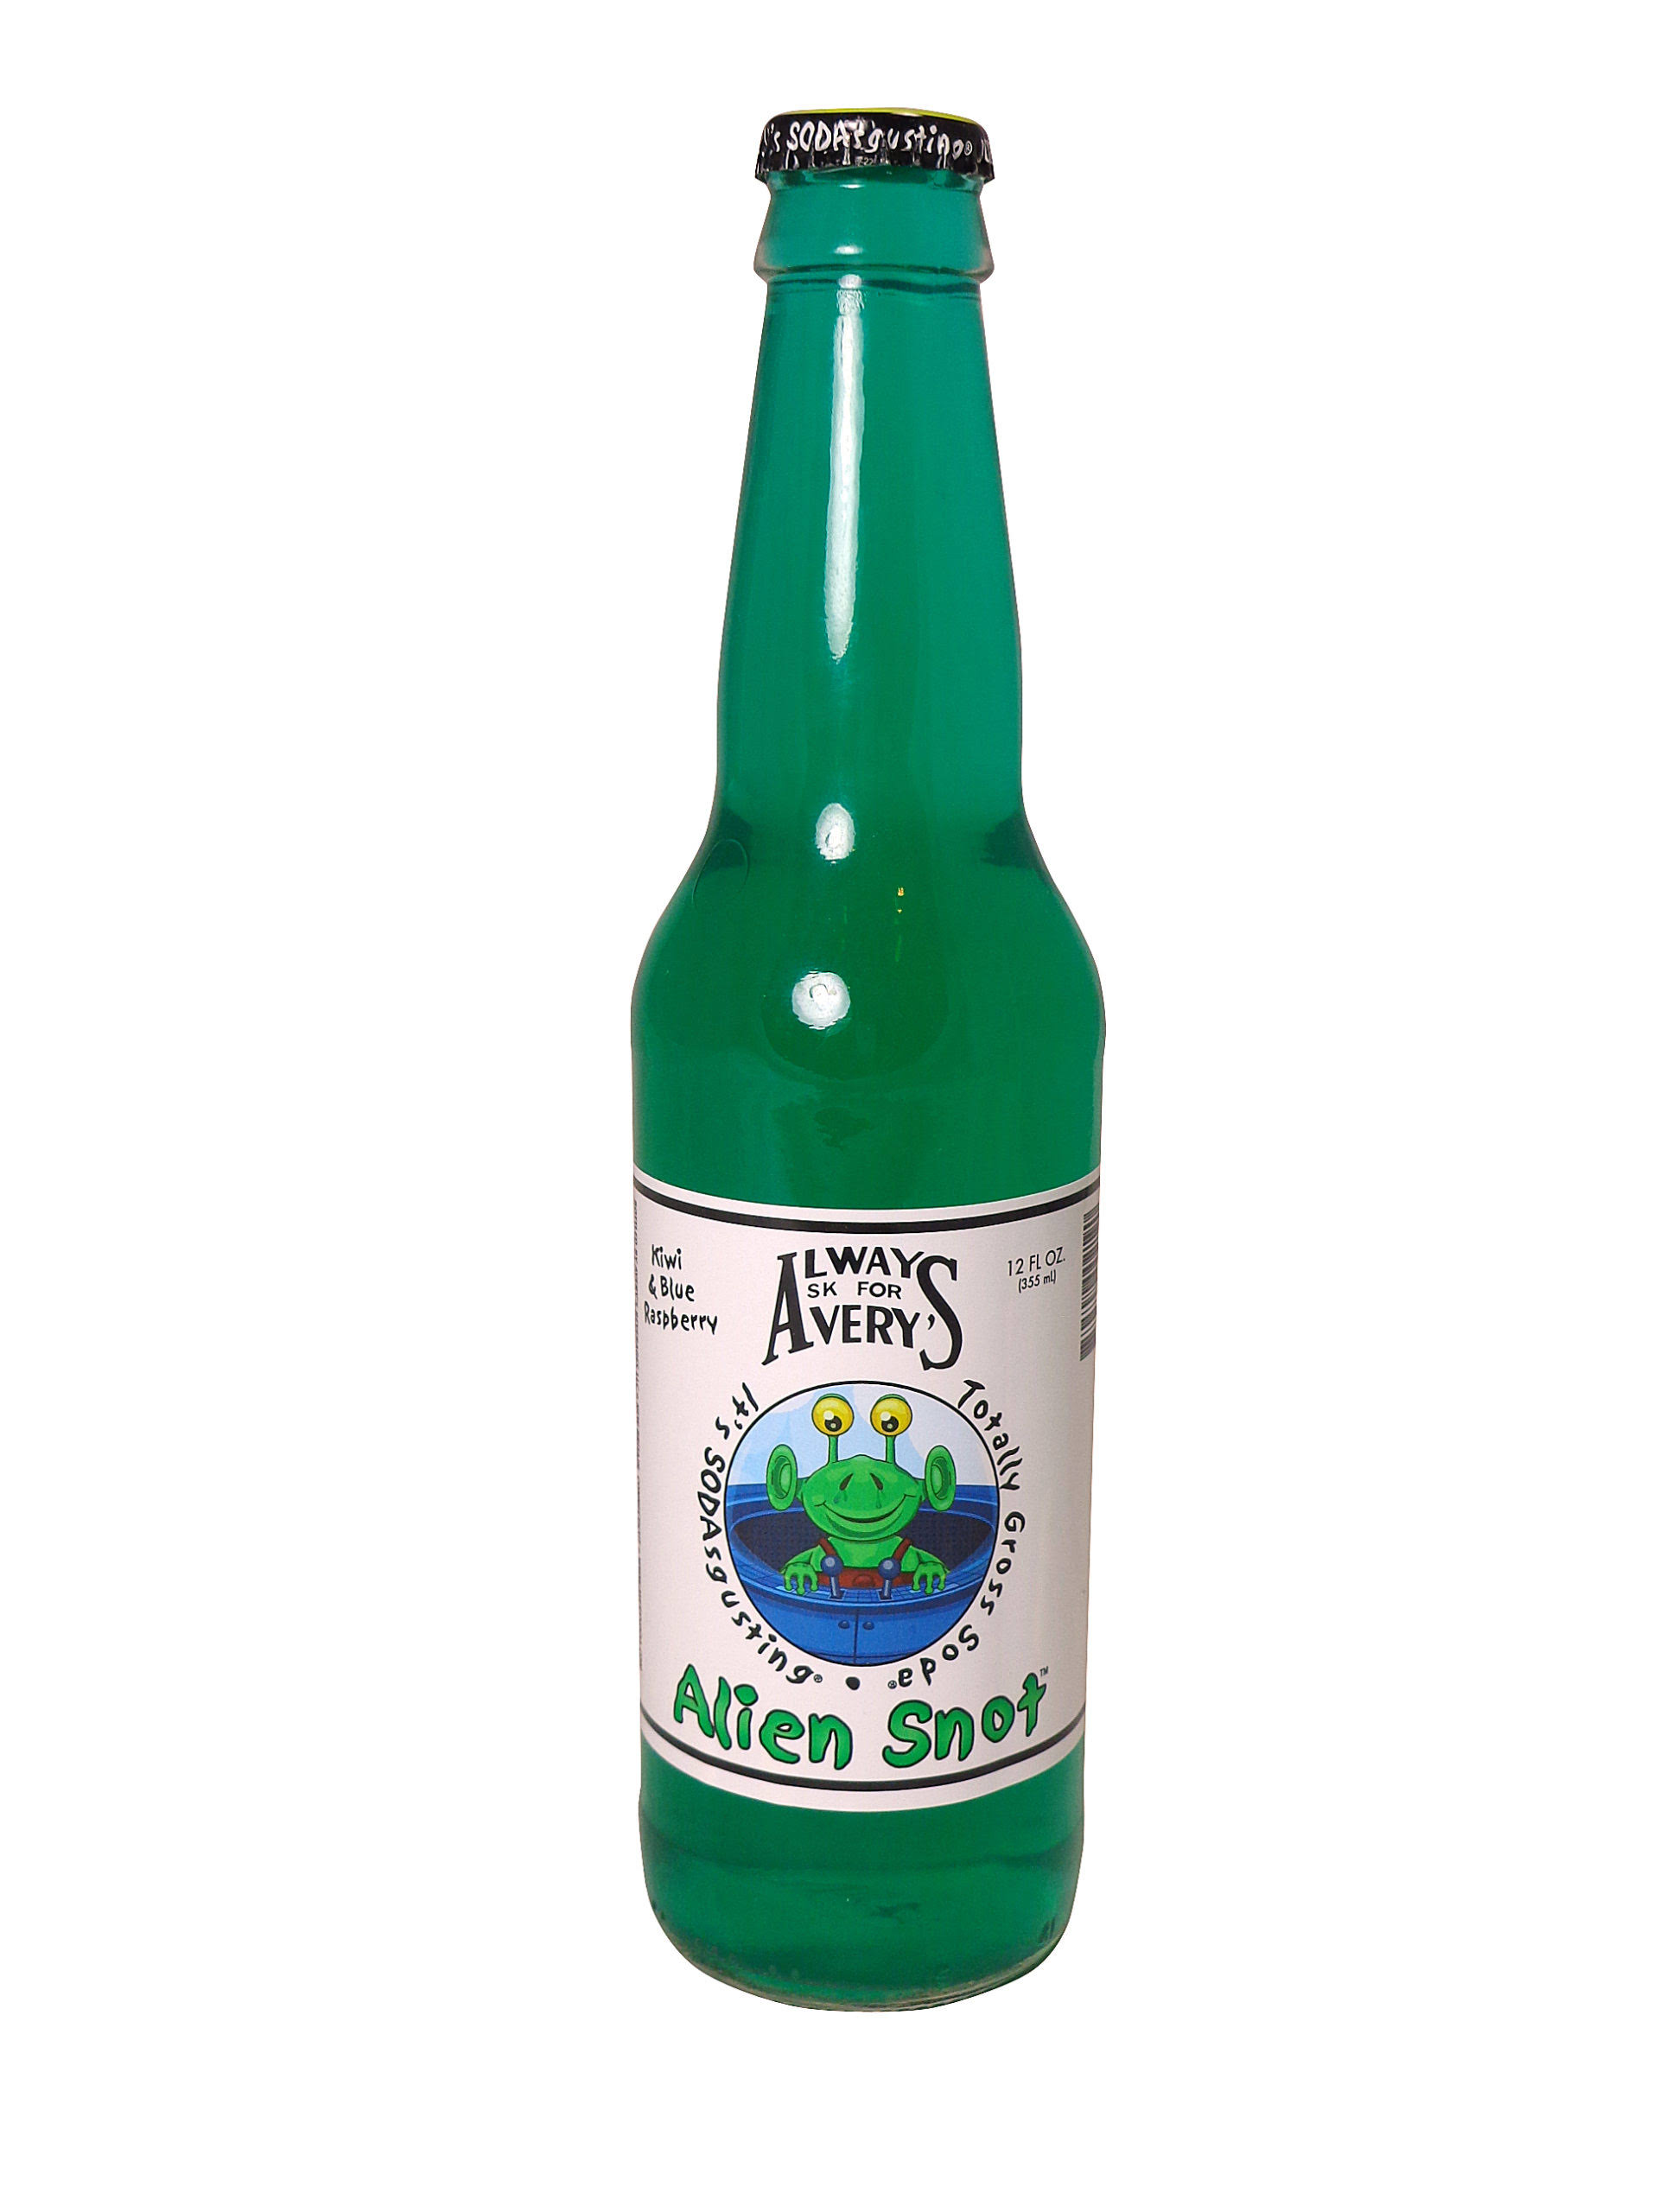 Avery's Alien Snot Soda